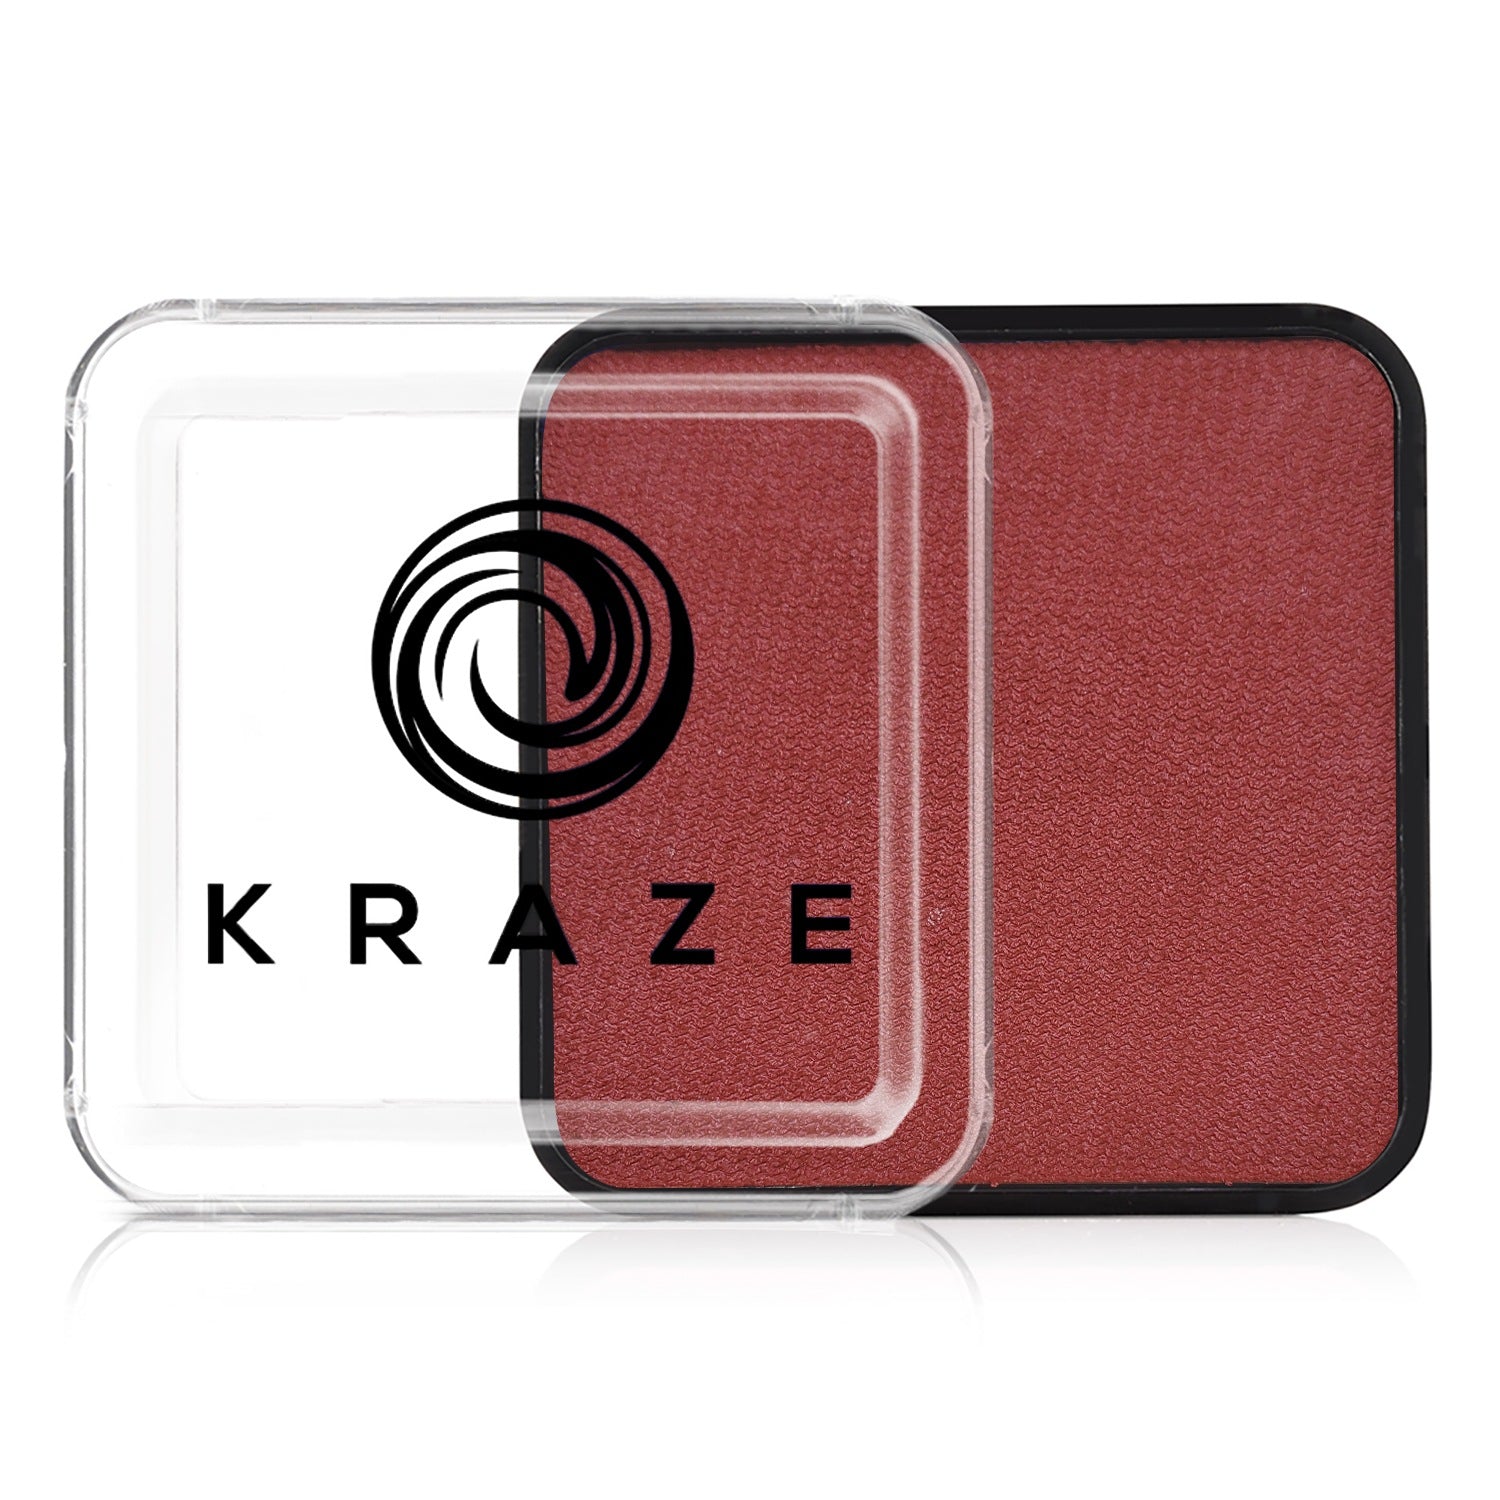 Kraze FX Face Paint - Metallic Red (25 gm)